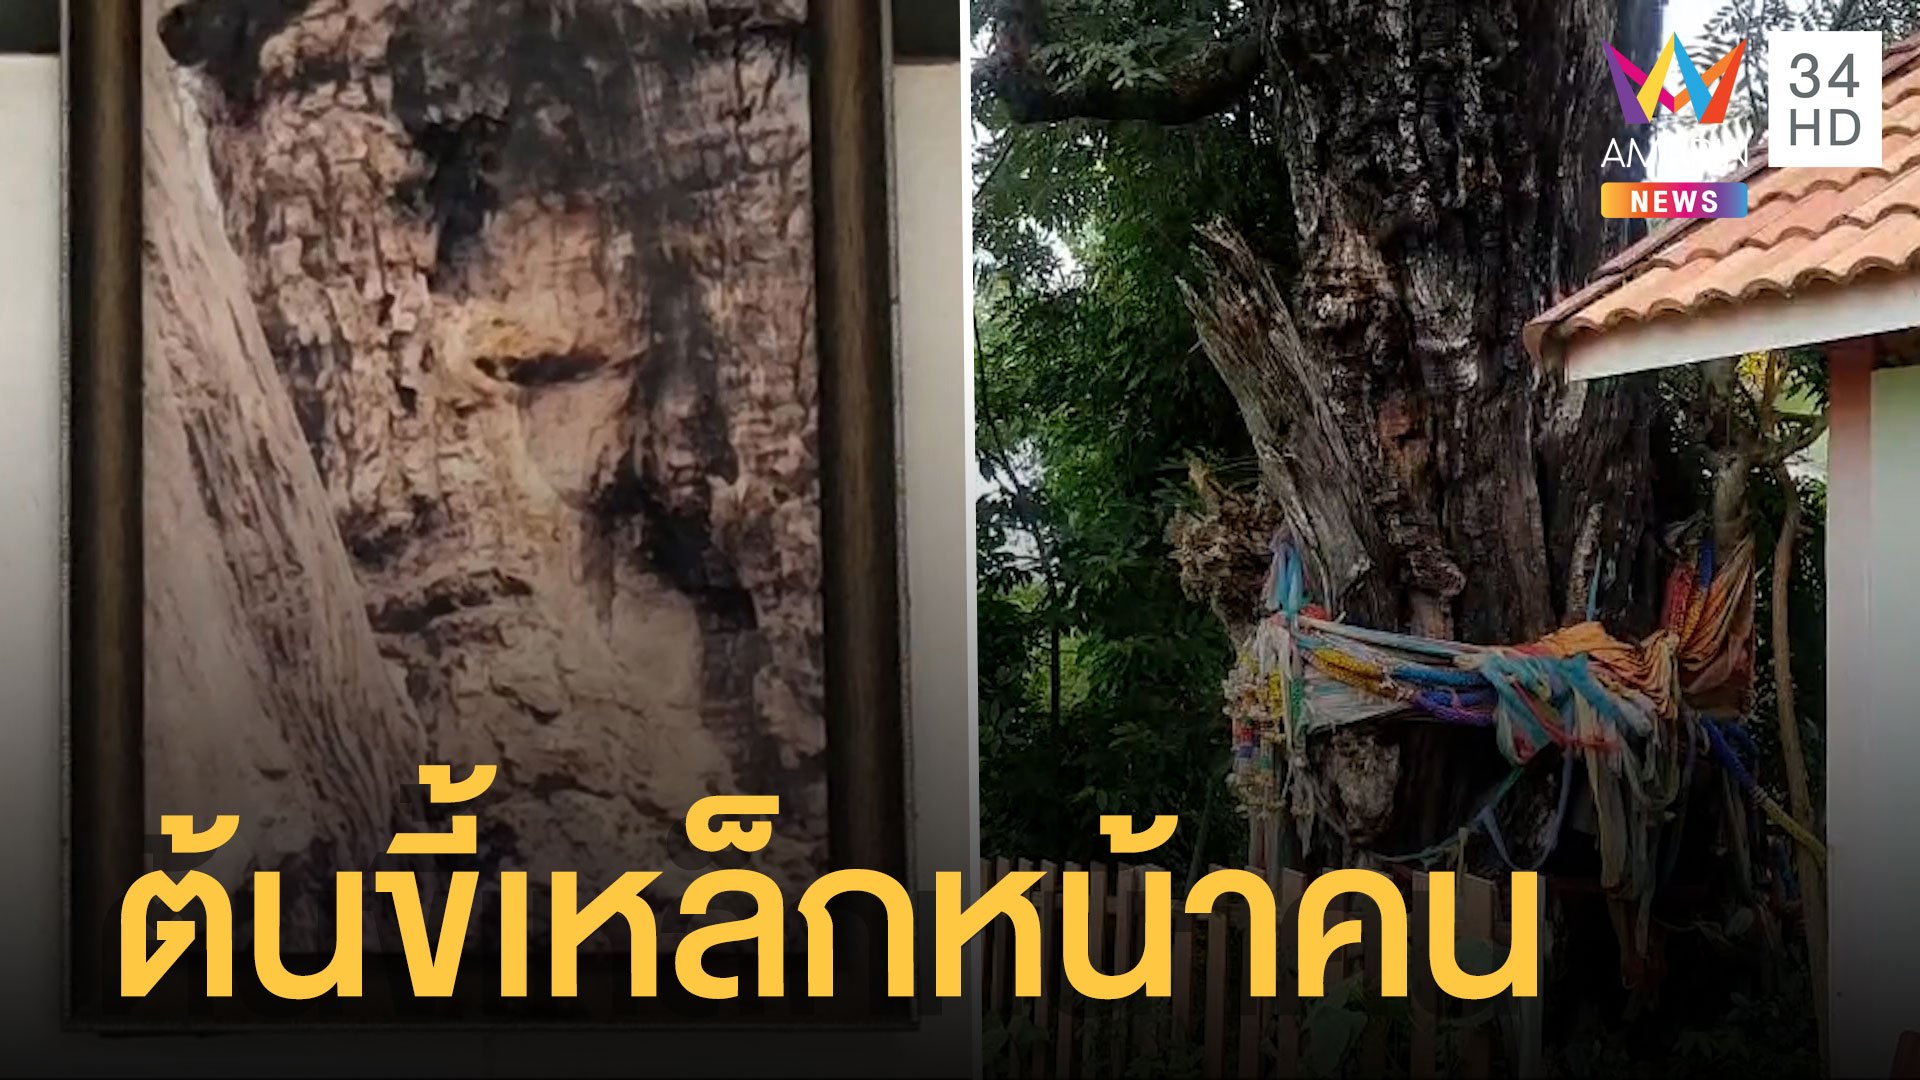 ต้นไม้ลายหน้าคนบนต้นขี้เหล็ก 700 ปี ชาวบ้านต้องถ่ายเก็บไว้ | ข่าวอรุณอมรินทร์ | 12 ส.ค. 65 | AMARIN TVHD34